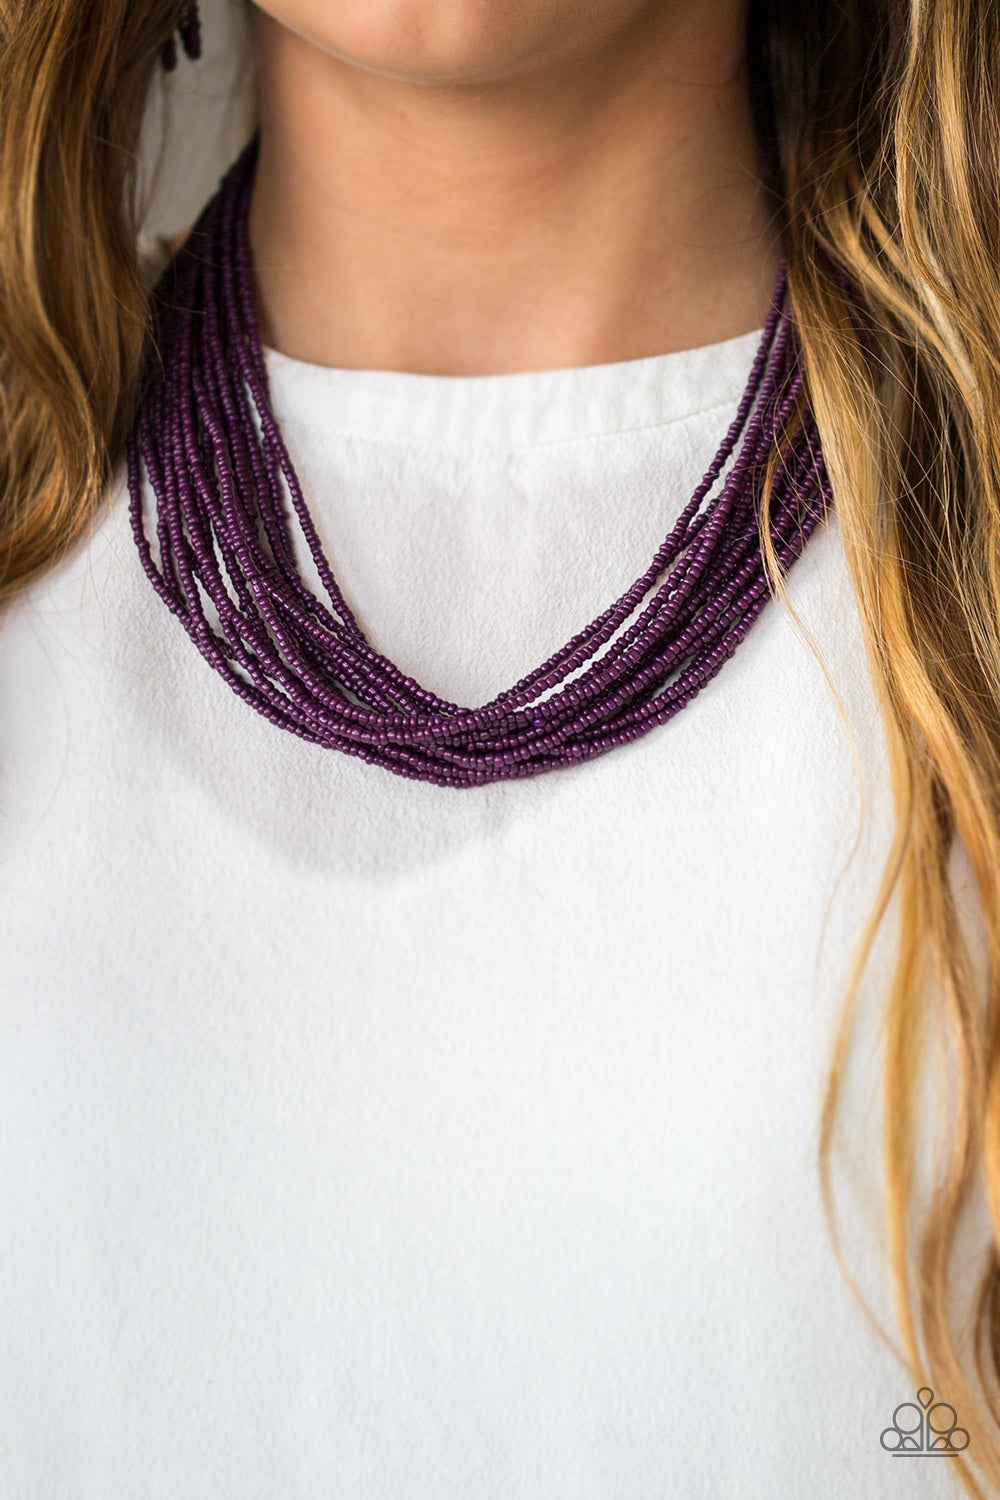 Wide Open Spaces - purple - Paparazzi necklace